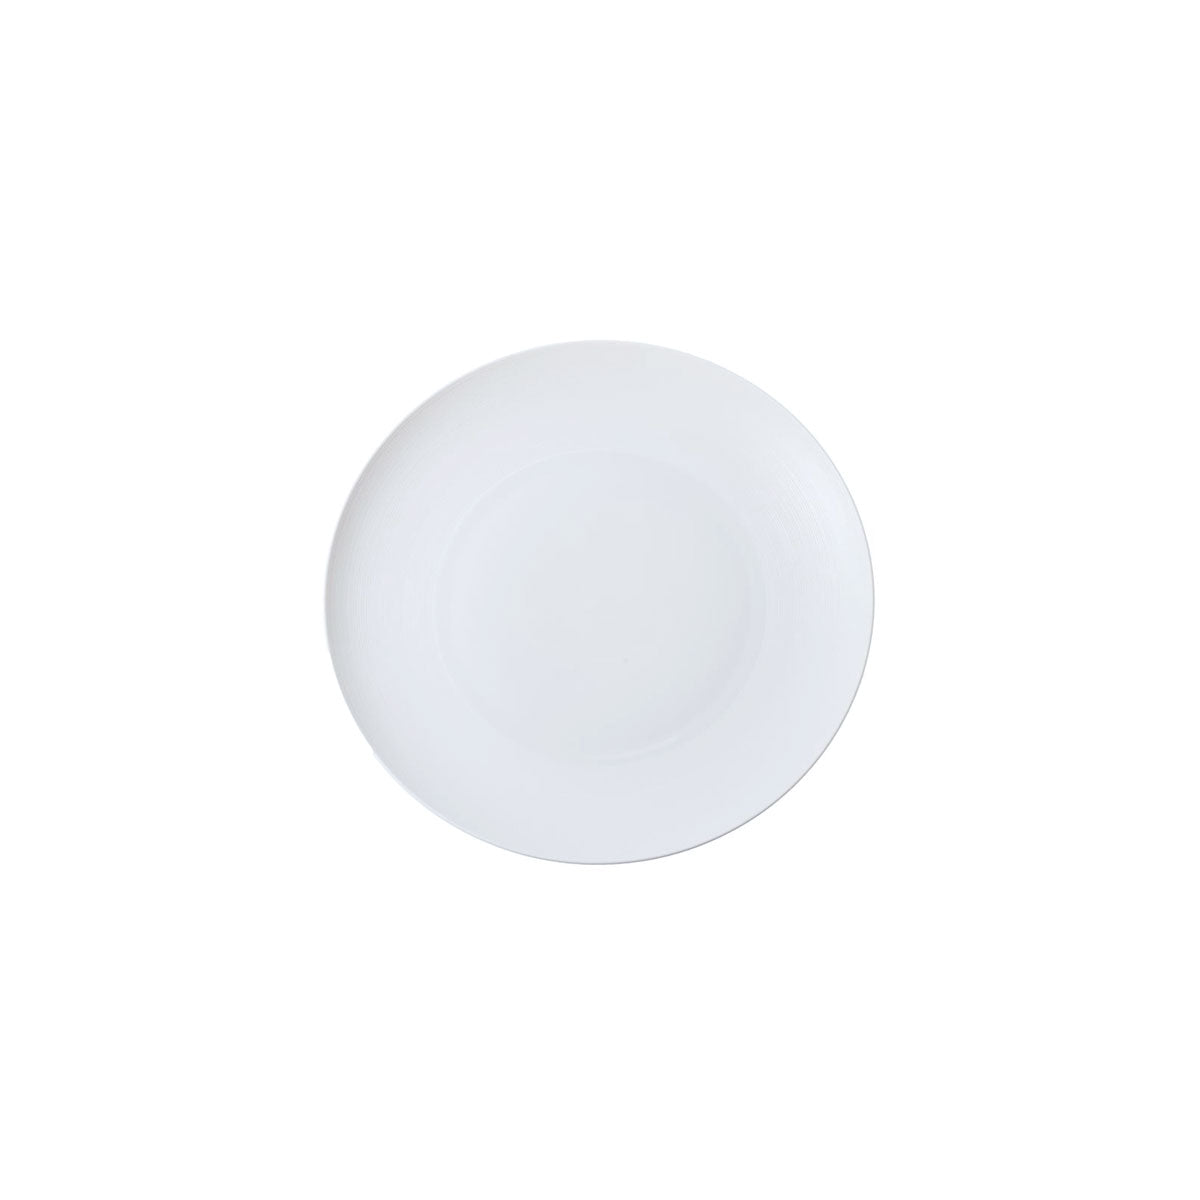 HEMISPHERE White Satin - Flat round dish, mini